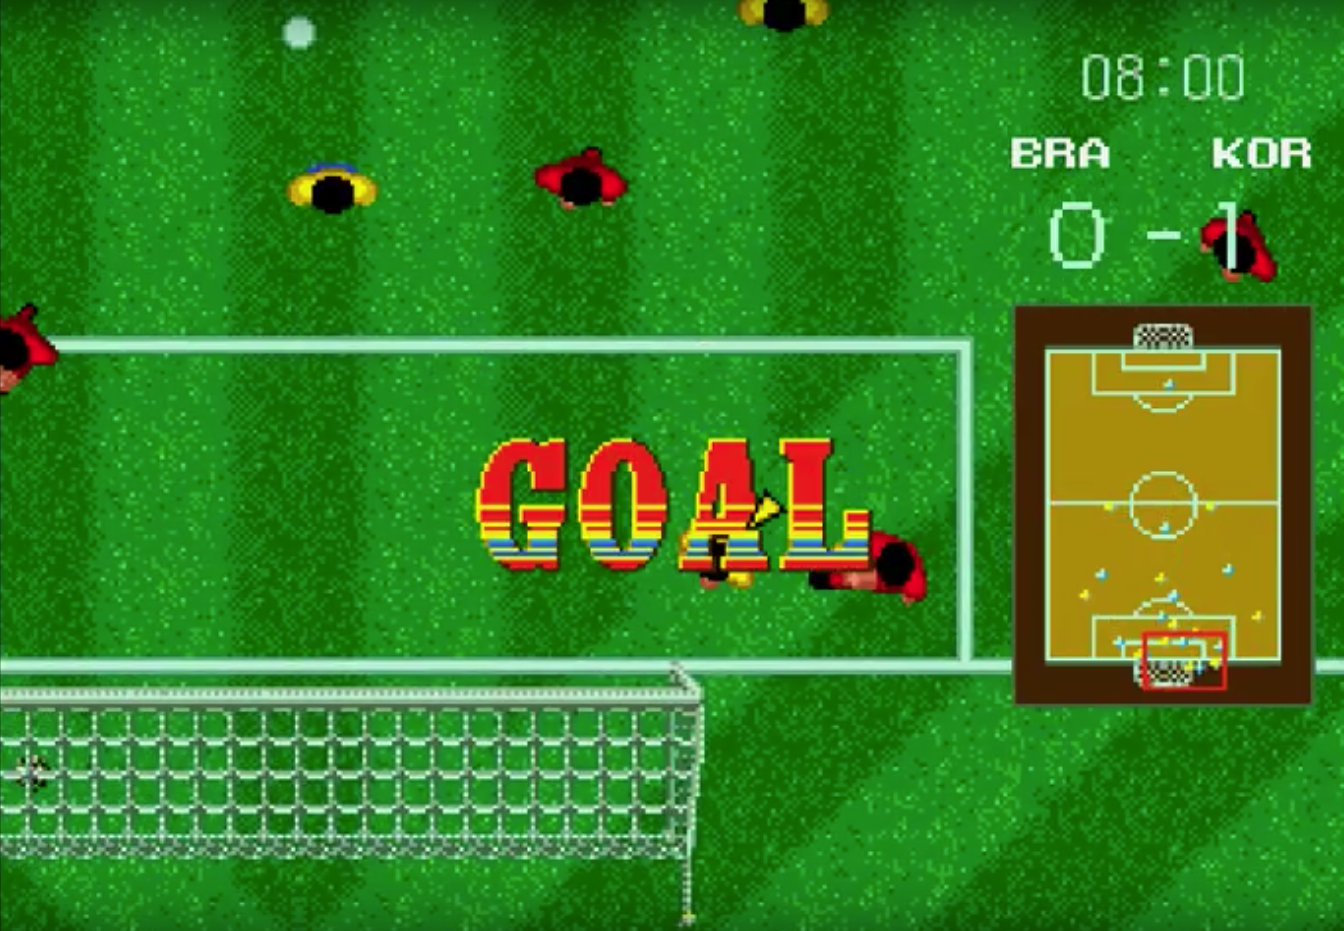 Los 10 juegos de fútbol más populares de los años 80 y 90 – El  Retronostálgico